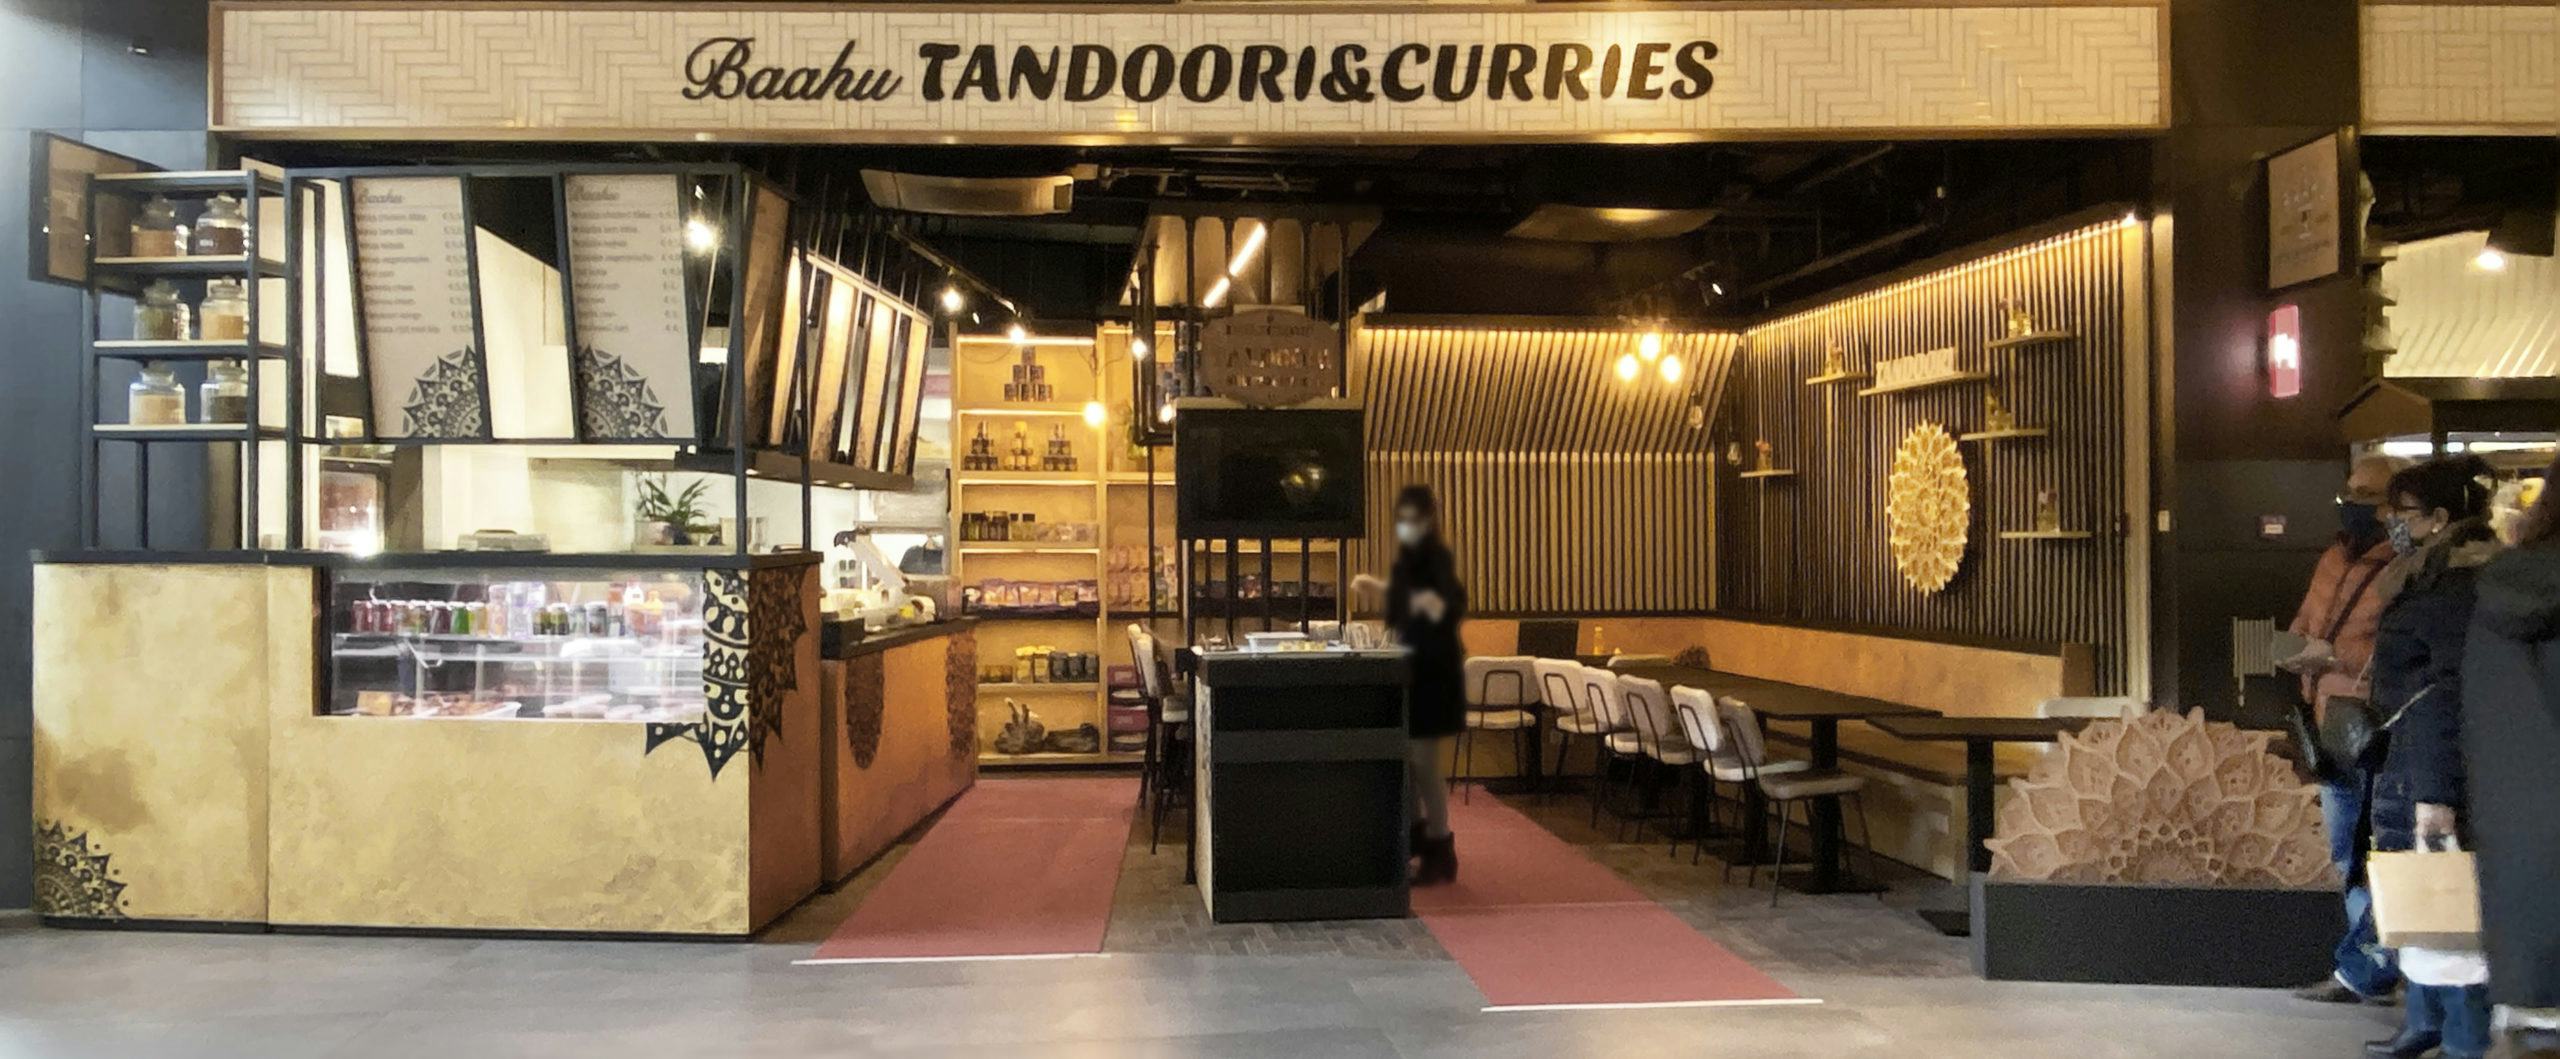 Baahu tandoori & curry - SHA